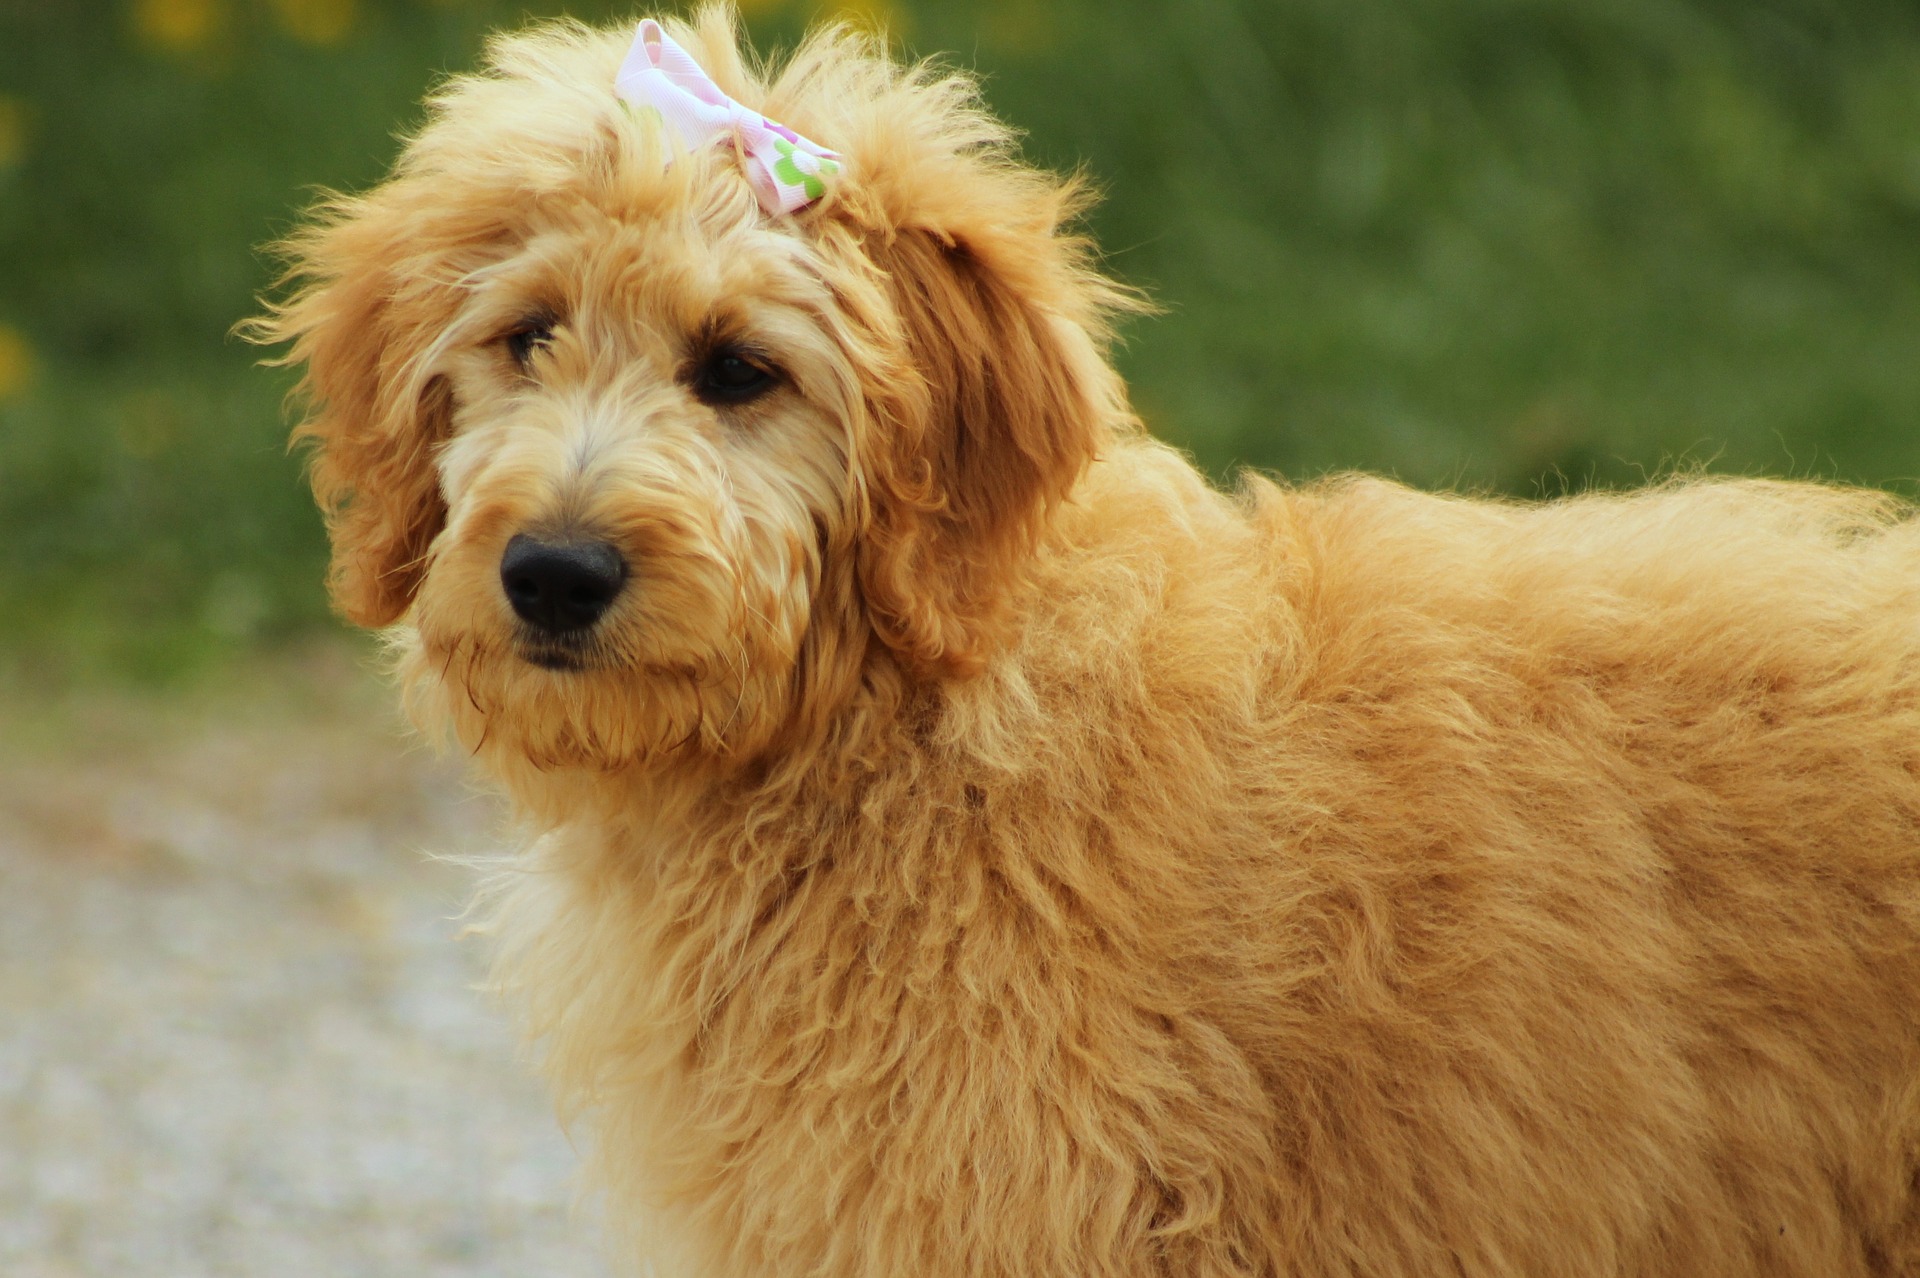 Goldendoodle ist ein Hund, der aus der Kreuzung eines Golden Retrievers und eines Pudels hervorgegangen ist. Eine solche Kreuzung wird von der International Kennel Federation nicht anerkannt.